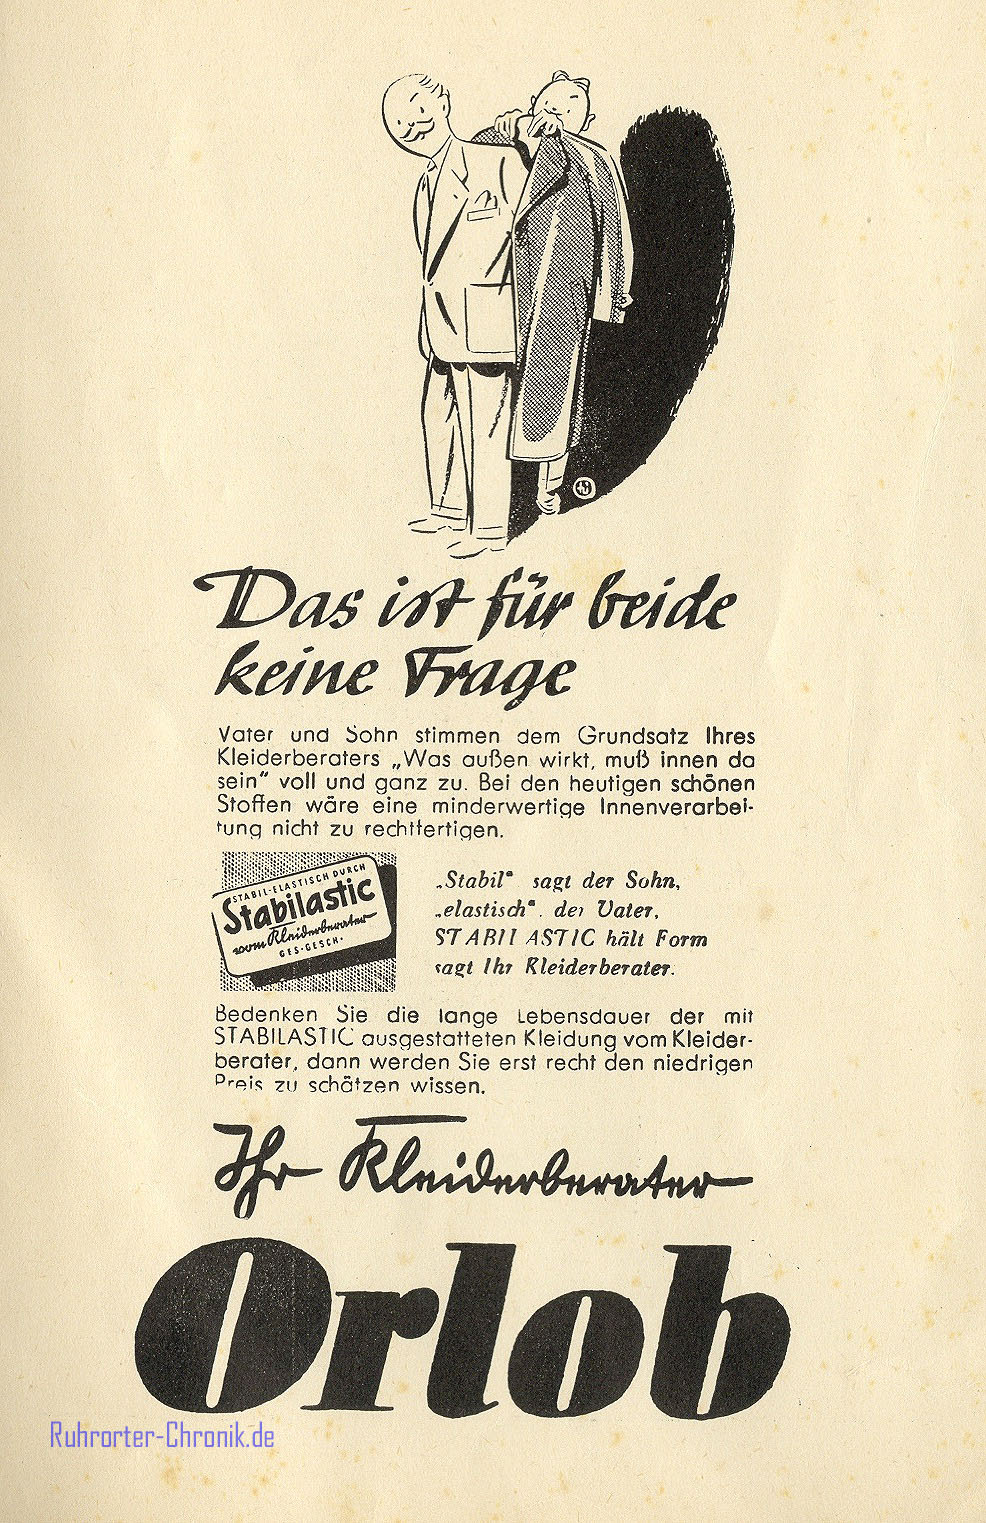 Alte Werbeanzeigen : Jahr: 1952